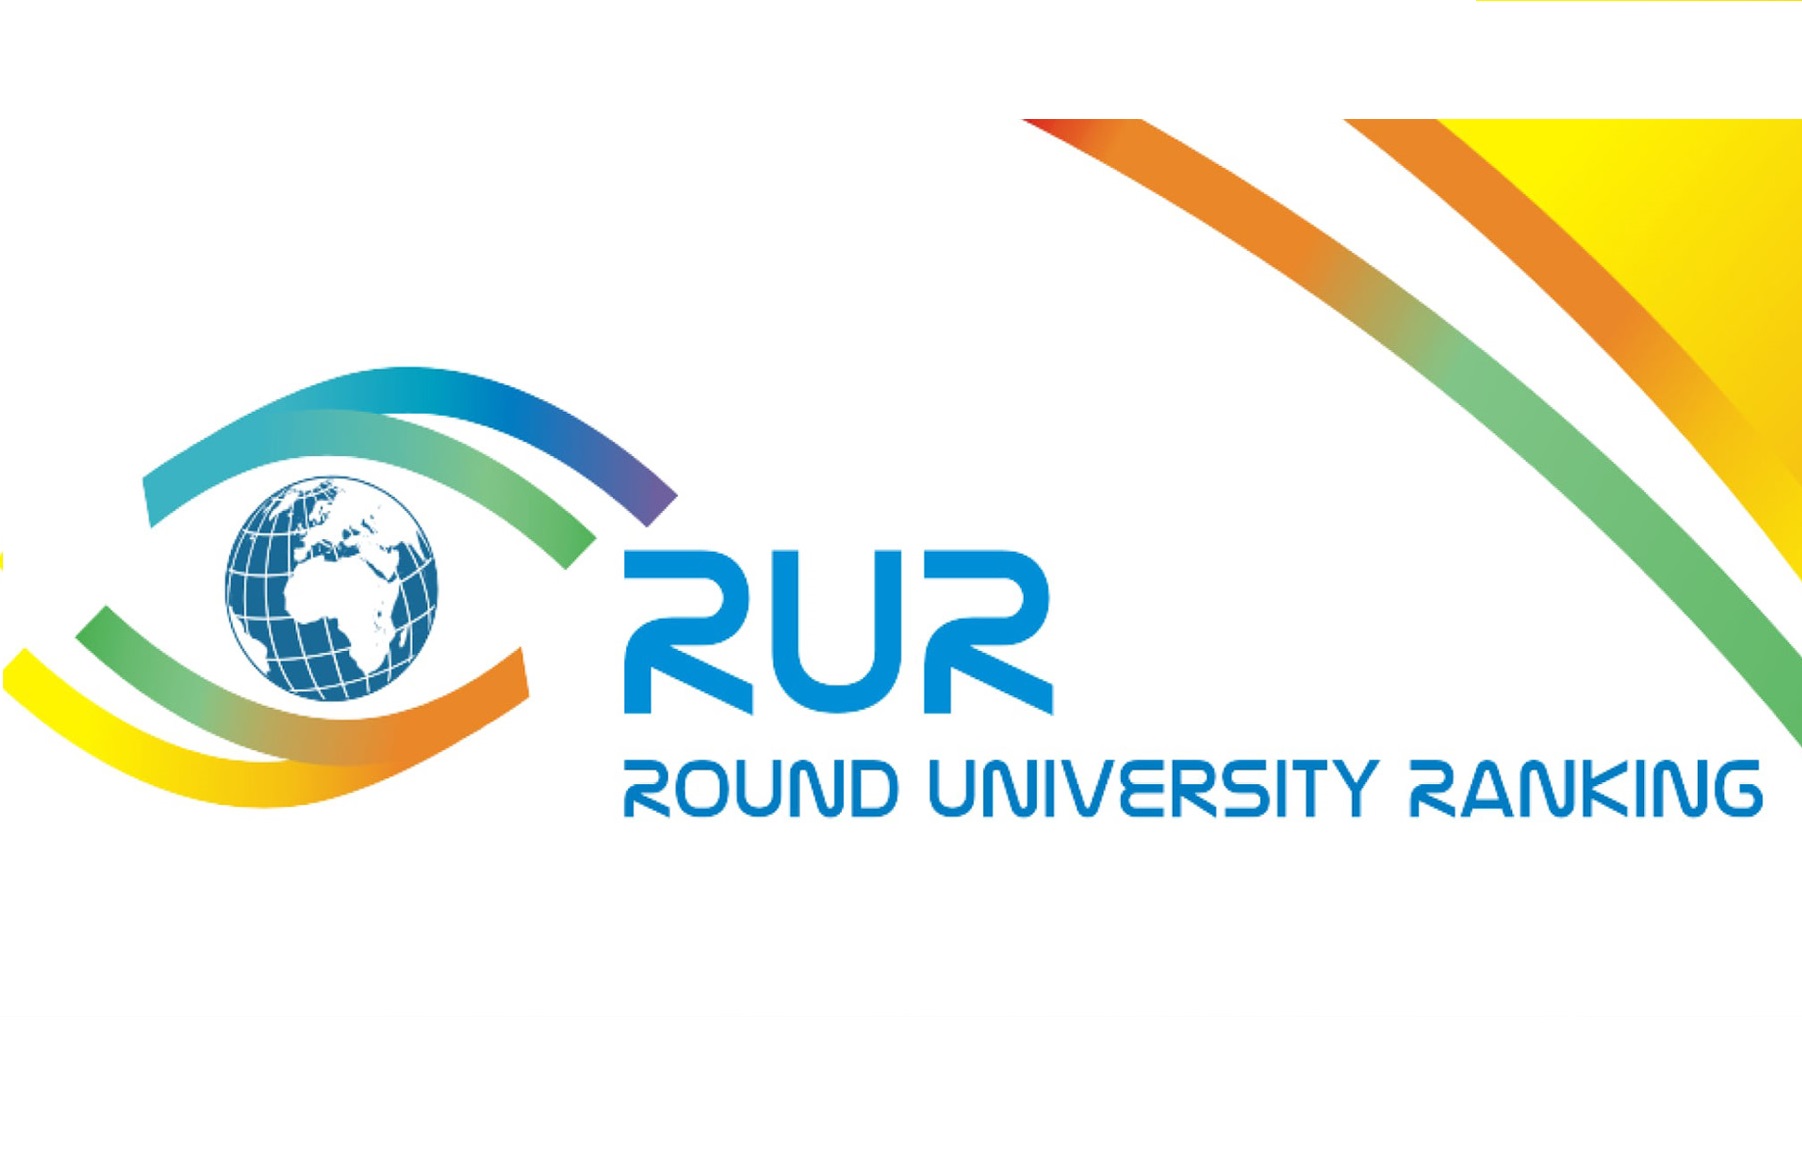 94 российских вуза вошли в рейтинг технических вузов RUR 2021